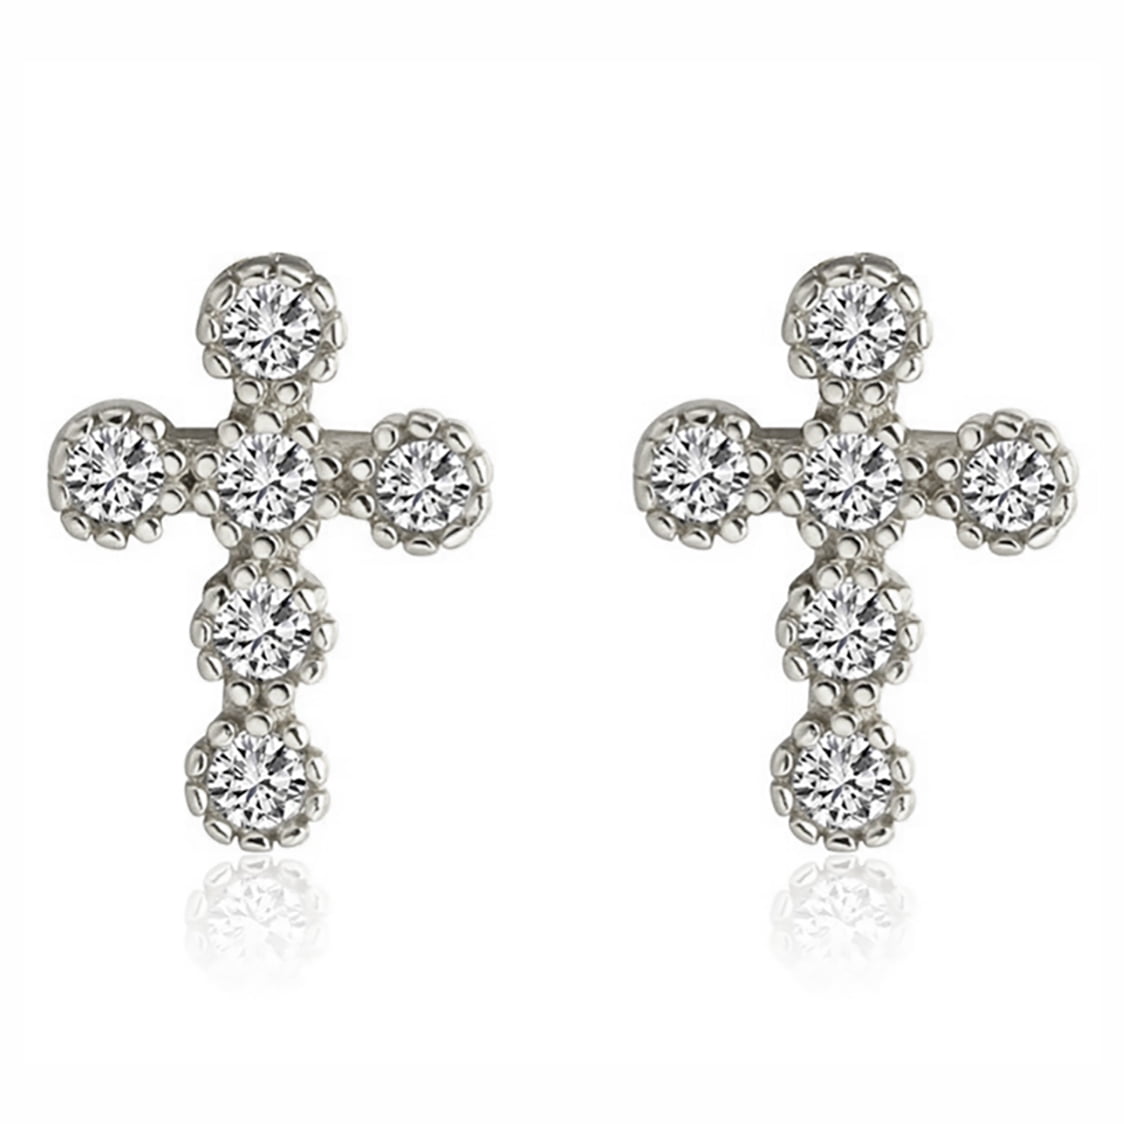 Religion Cross Stud Earrings Cz Gold Sterling Silver Women Ginger Lyne